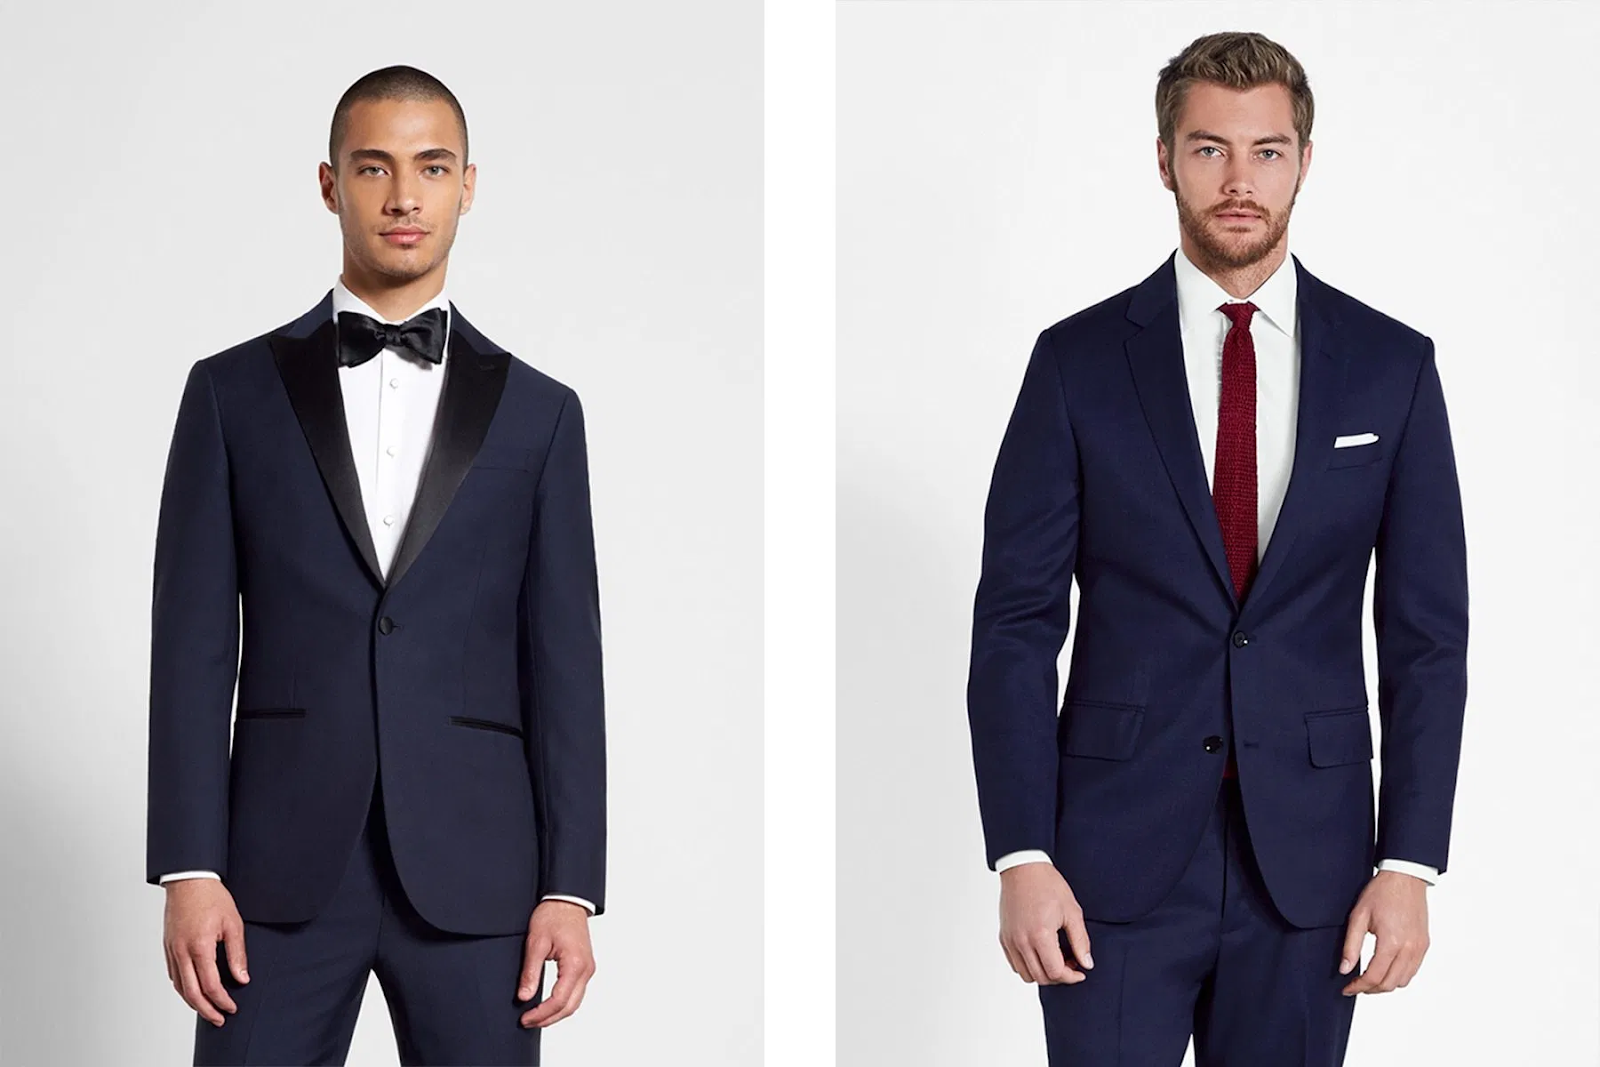 Suit vs. Jacket